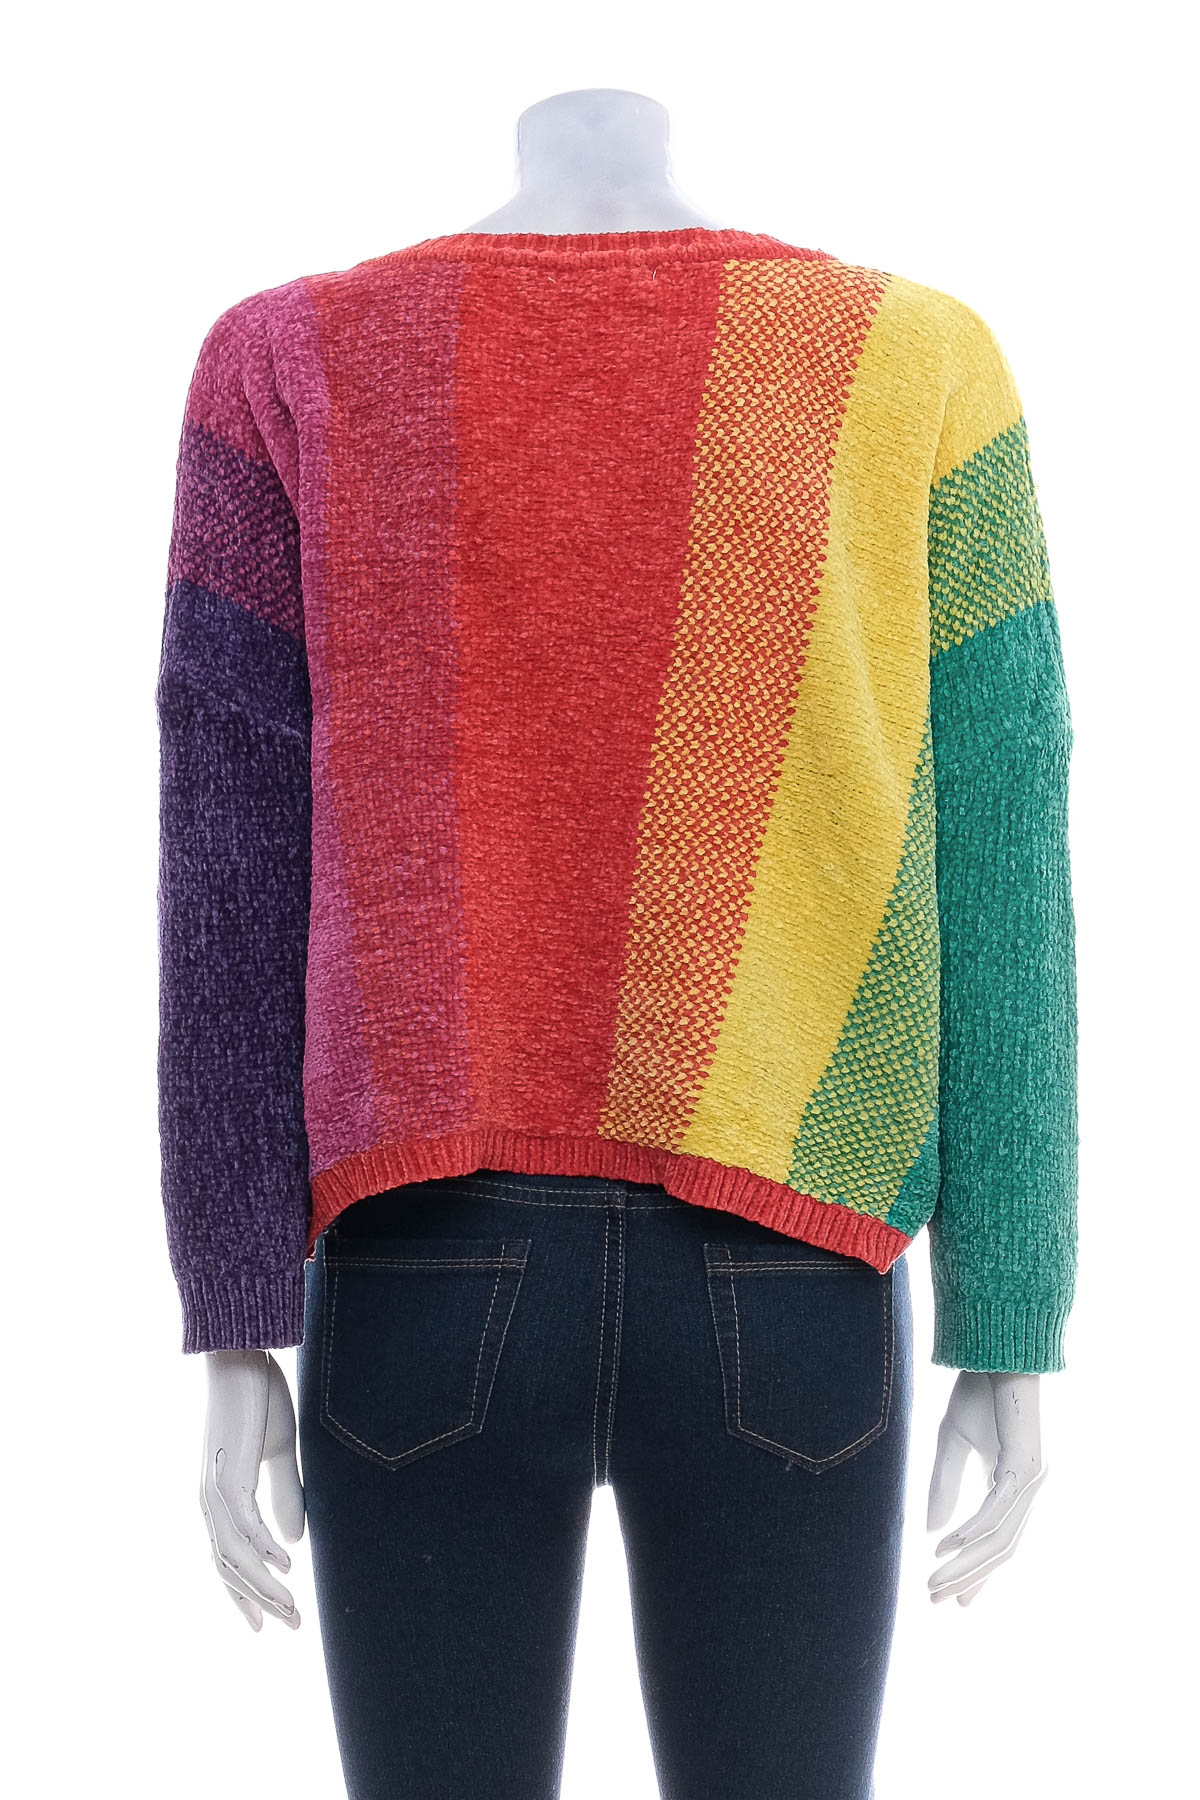 Women's sweater - Luv Lane - 1